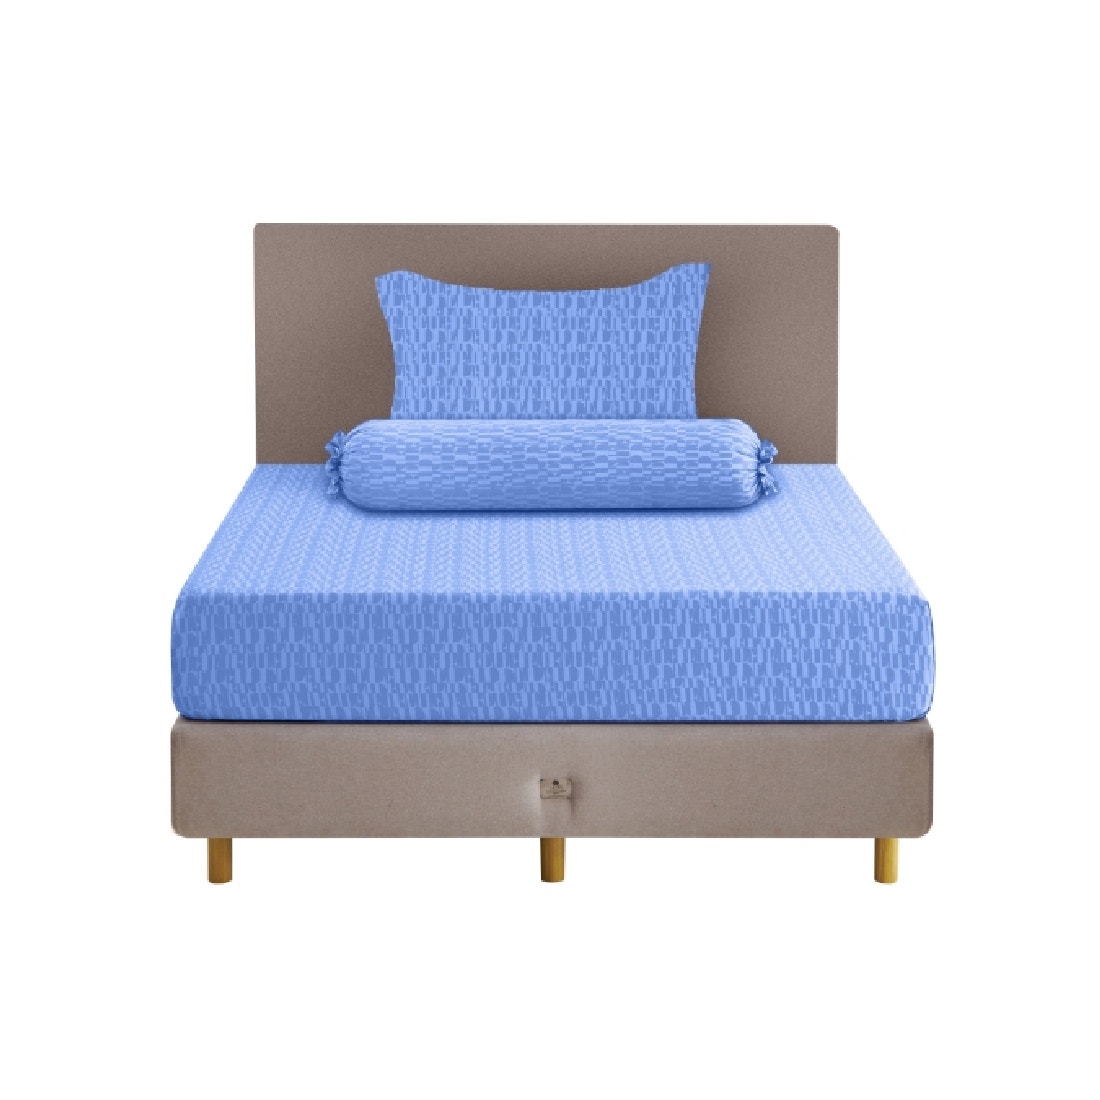 ชุดผ้าปูที่นอน ELLE DECOR รุ่น PARIS SIMPLICITE - MACARONS 3.5ฟุต 3ชิ้น